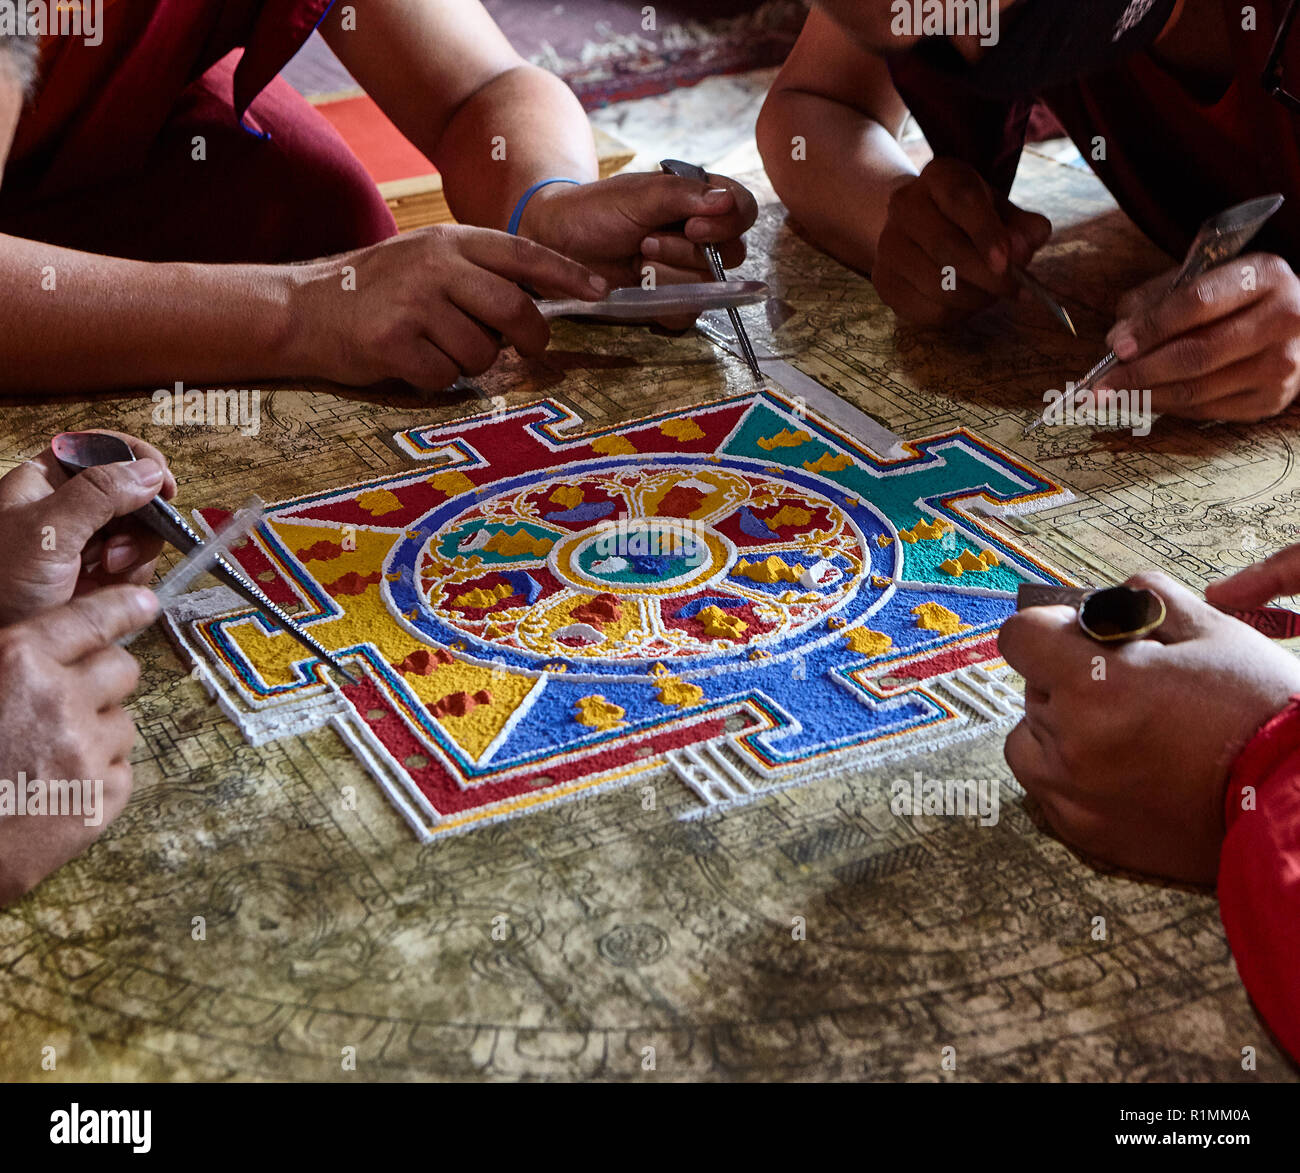 Buddhistische Mönche erschaffen im Kloster Lamayuru ein Mandala aus farbigem Sand. Ladakh, Jammu und Kaschmir, IndienLadakh, Jammu und Kaschmir, Indien Stockfoto